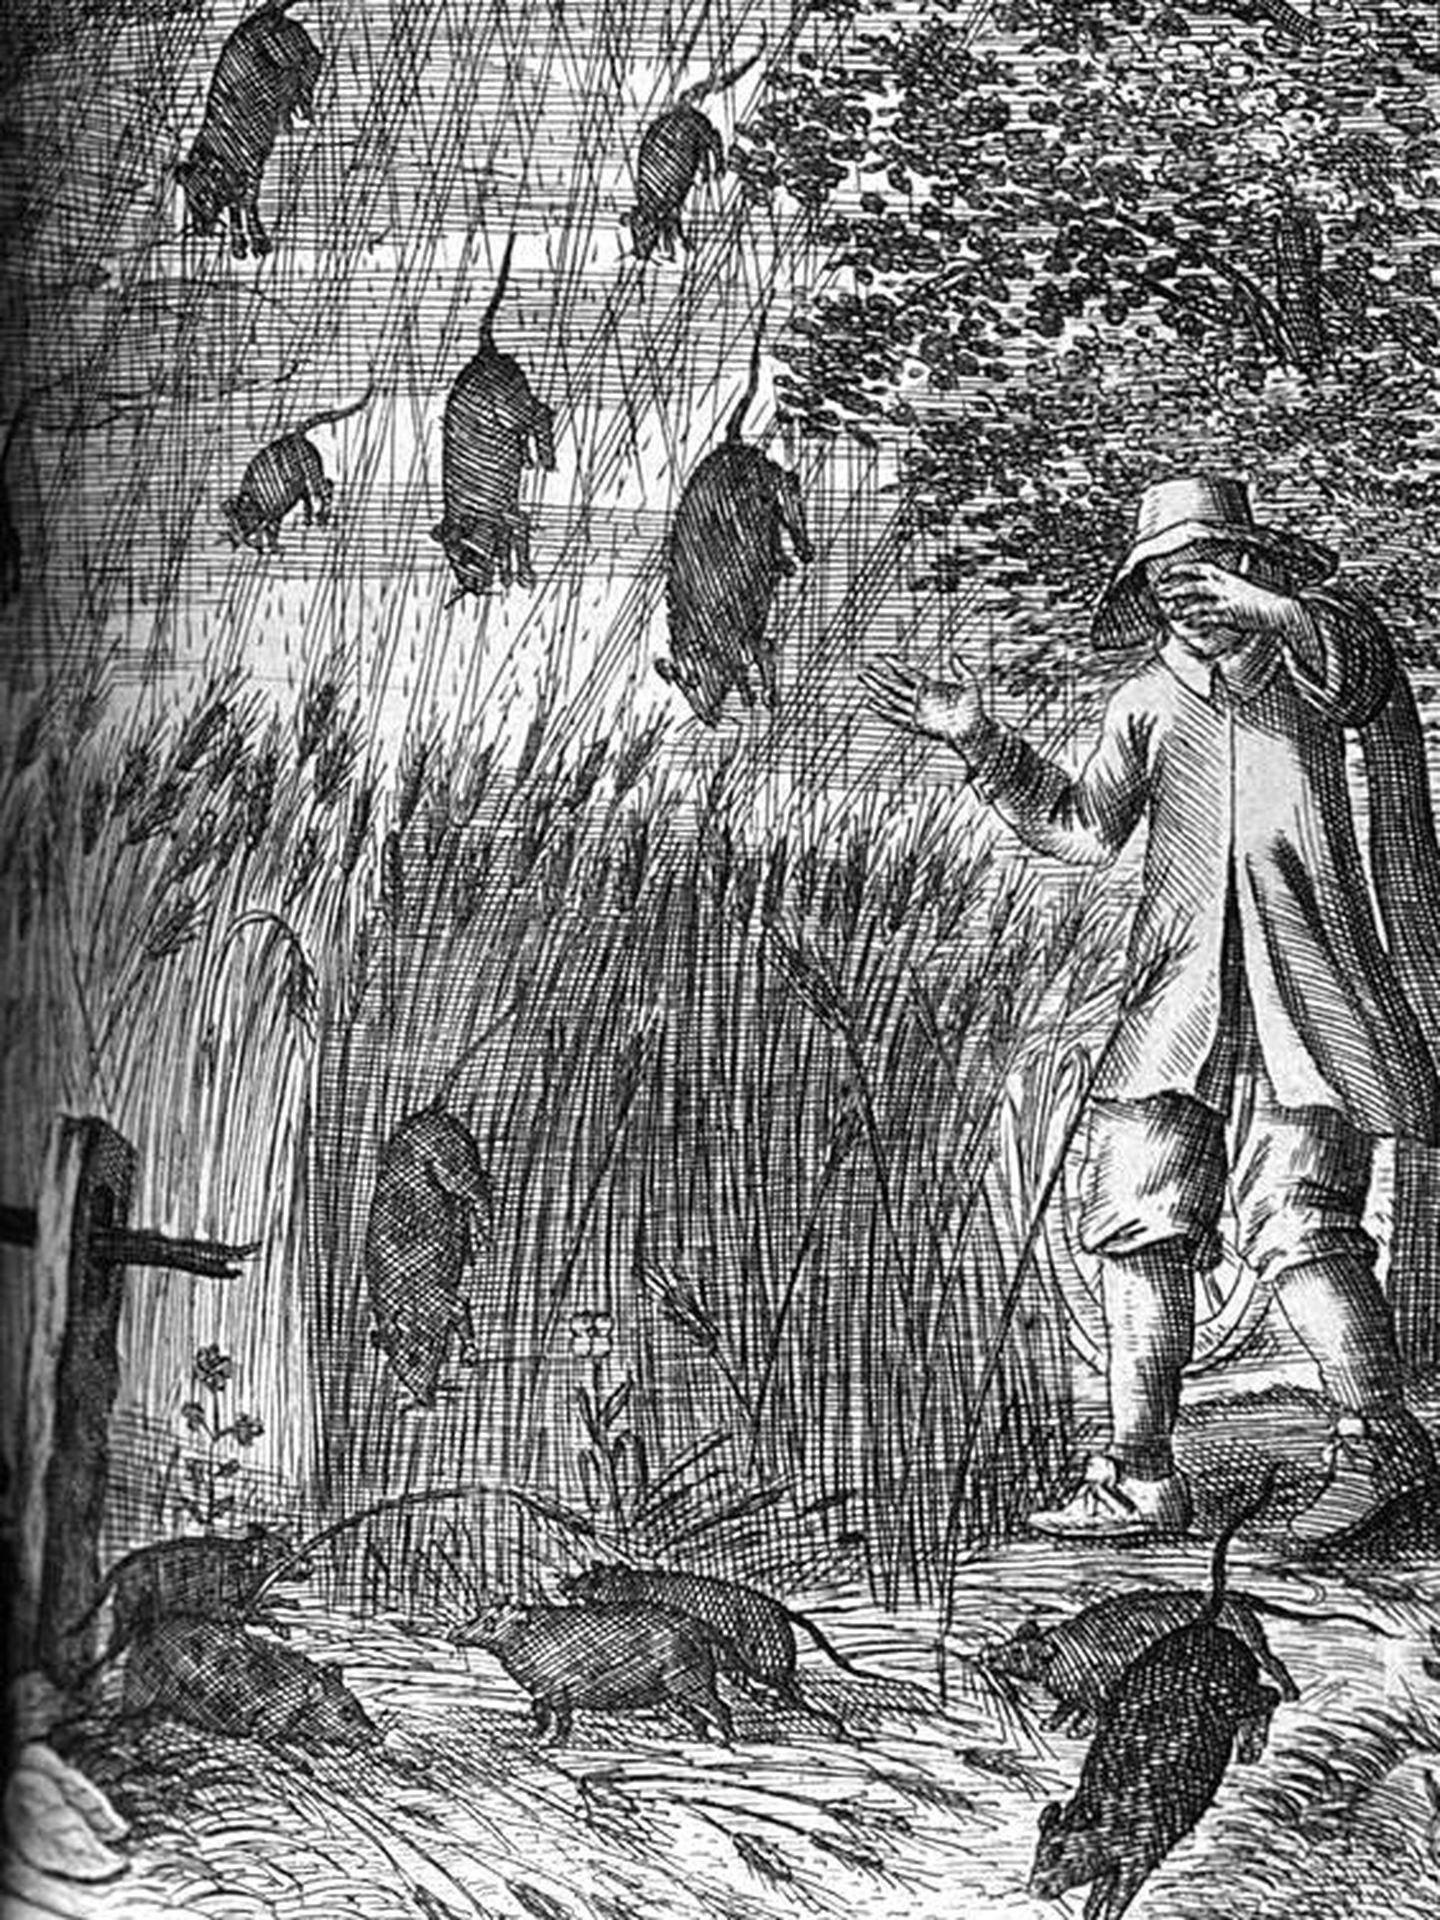 Llueven ratas durante una tormenta violenta en la ilustración 'El maravilloso viaje de nuestro Nider-Welt…', por Erasmus Francisci. (Colección del Servicio Meteorológico Nacional (NWS) de la NOAA.